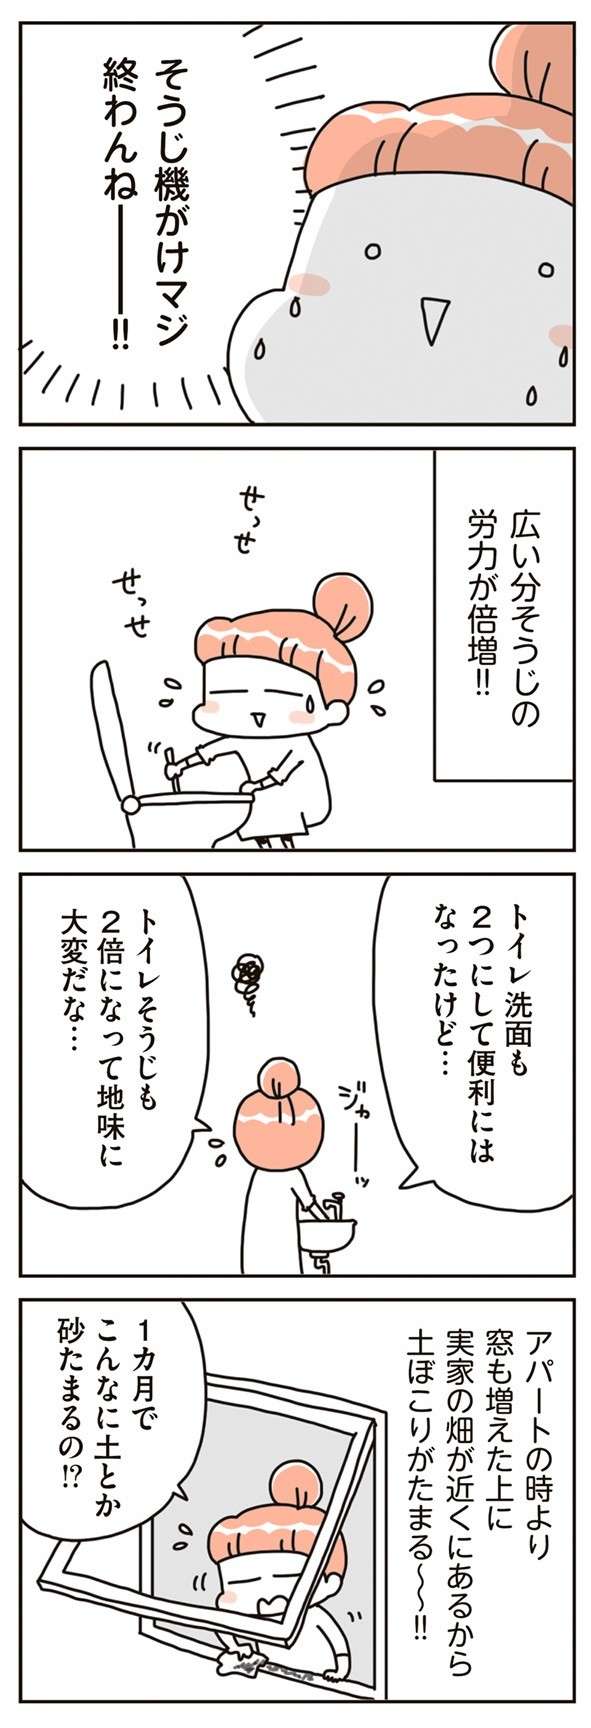 chintaika_mochiieka4-7.jpg